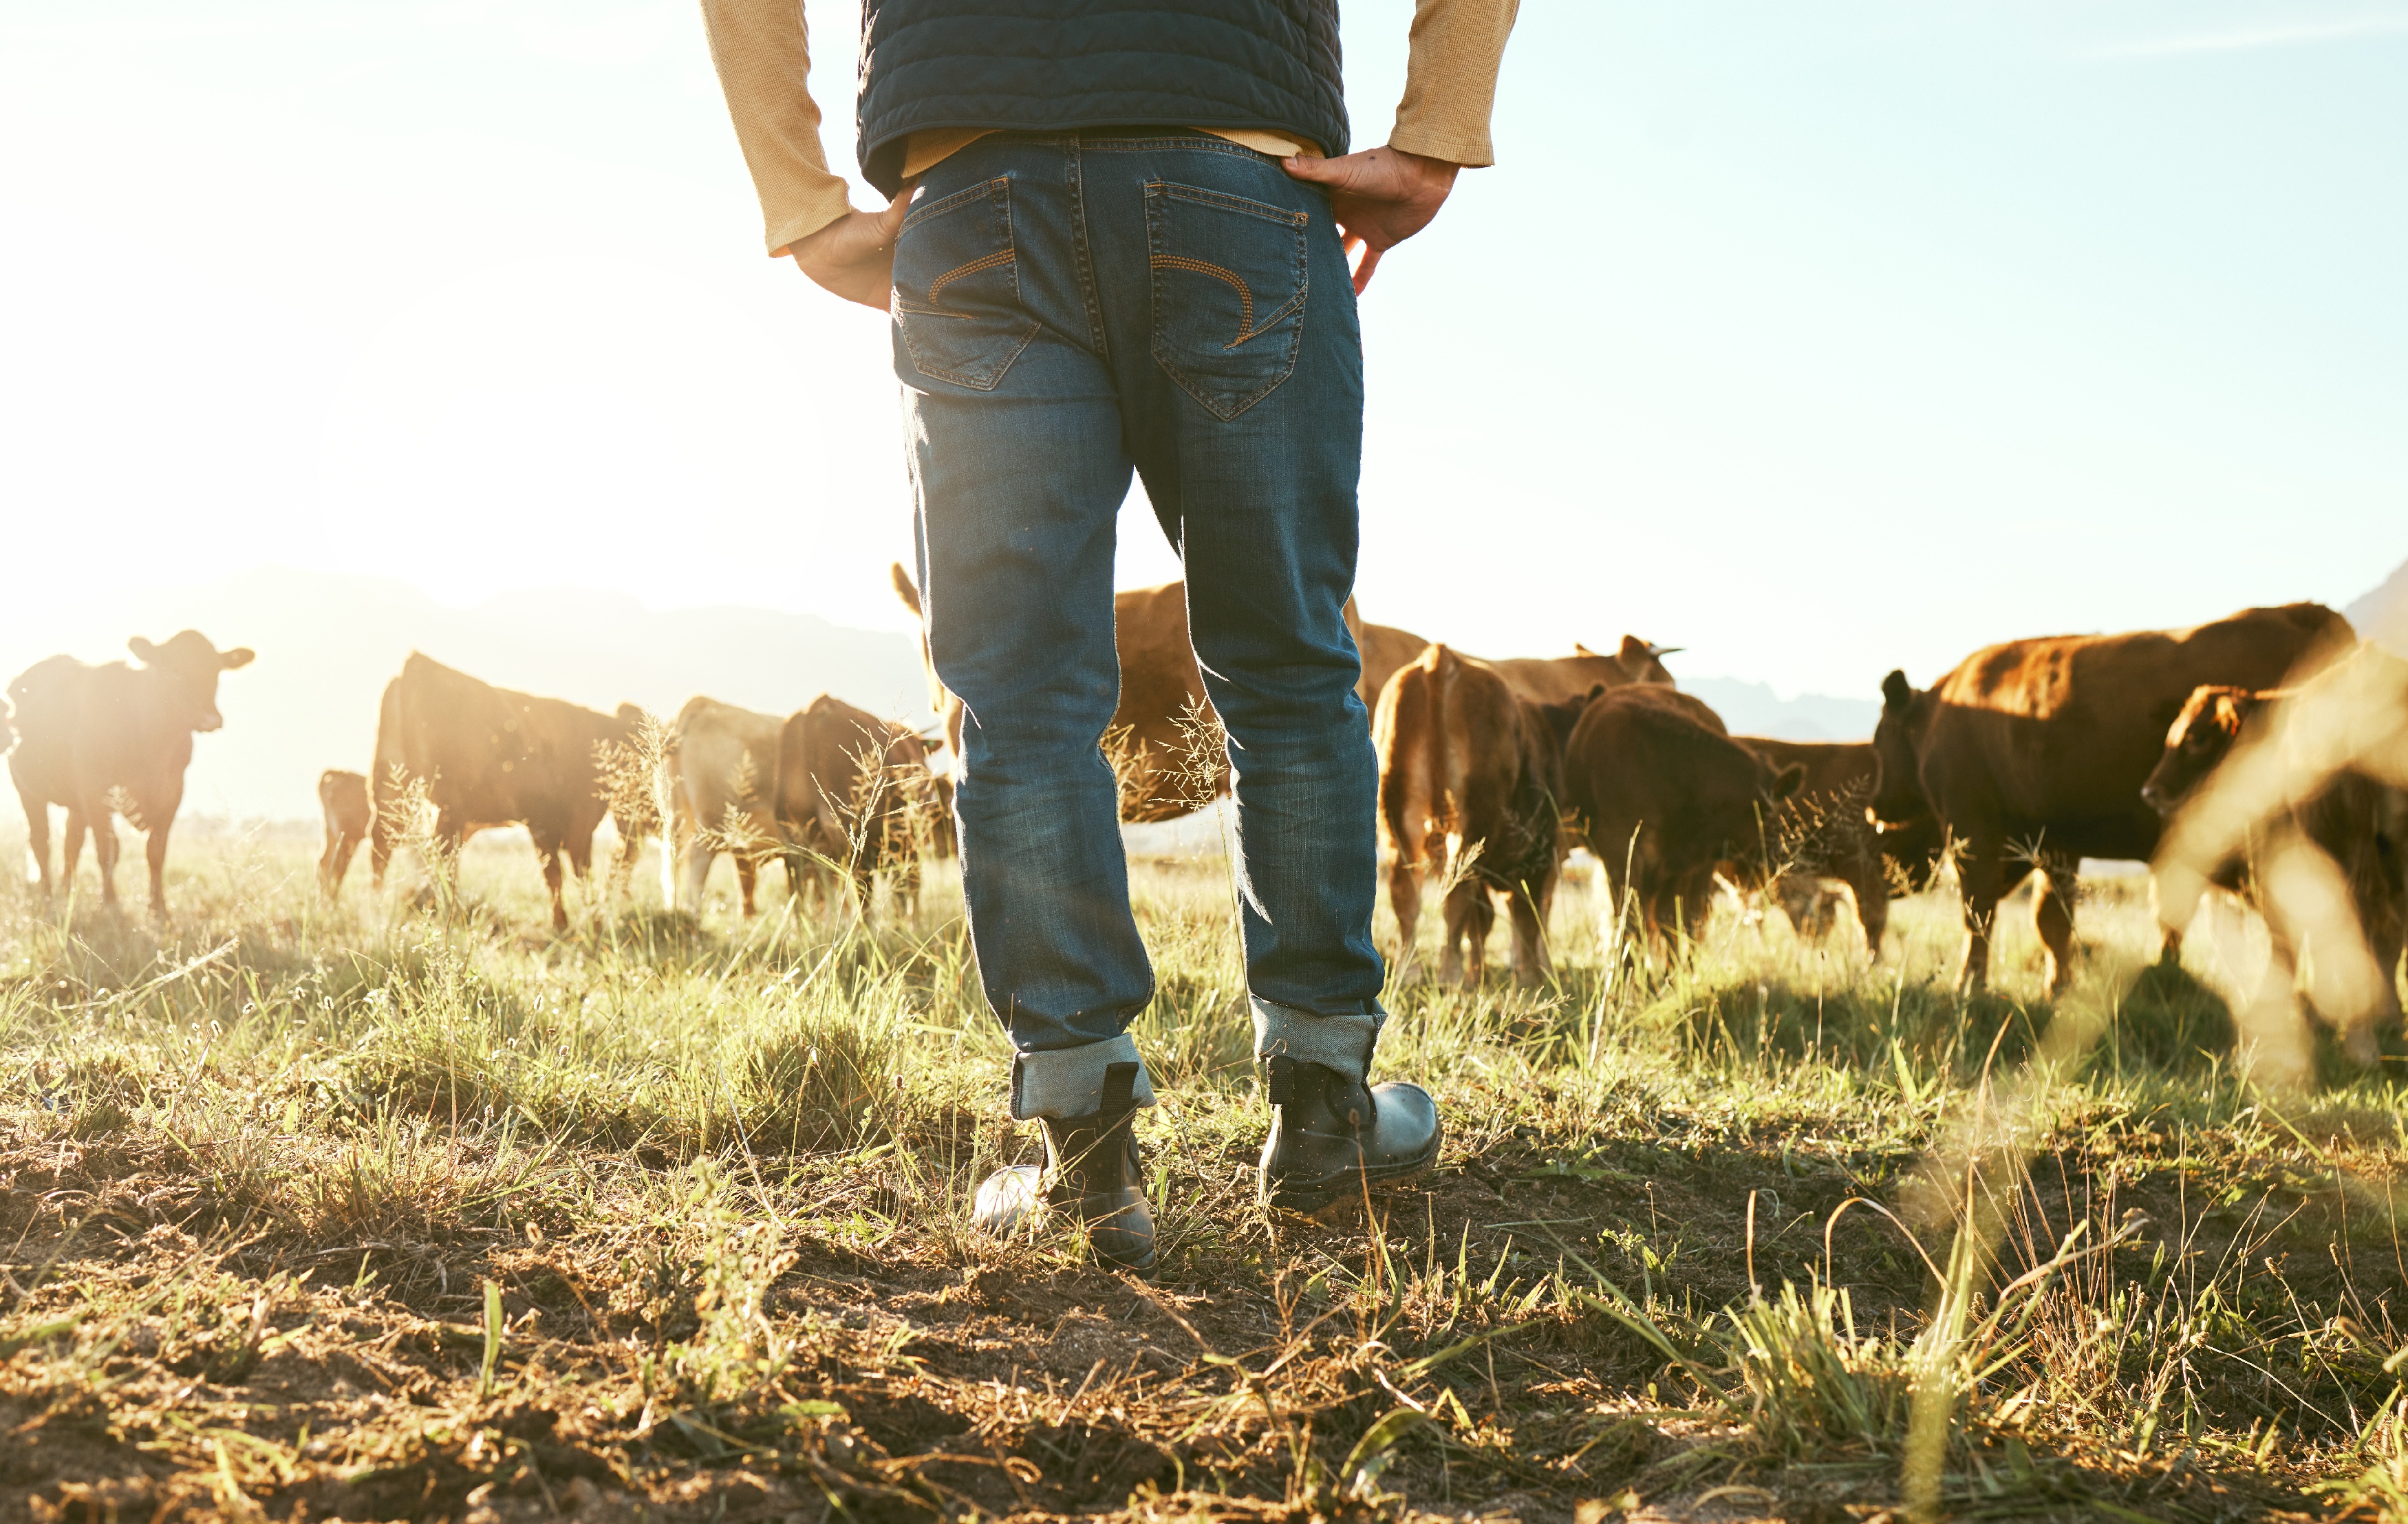 Beine vom Landwirt mit Kuhherde auf Weide